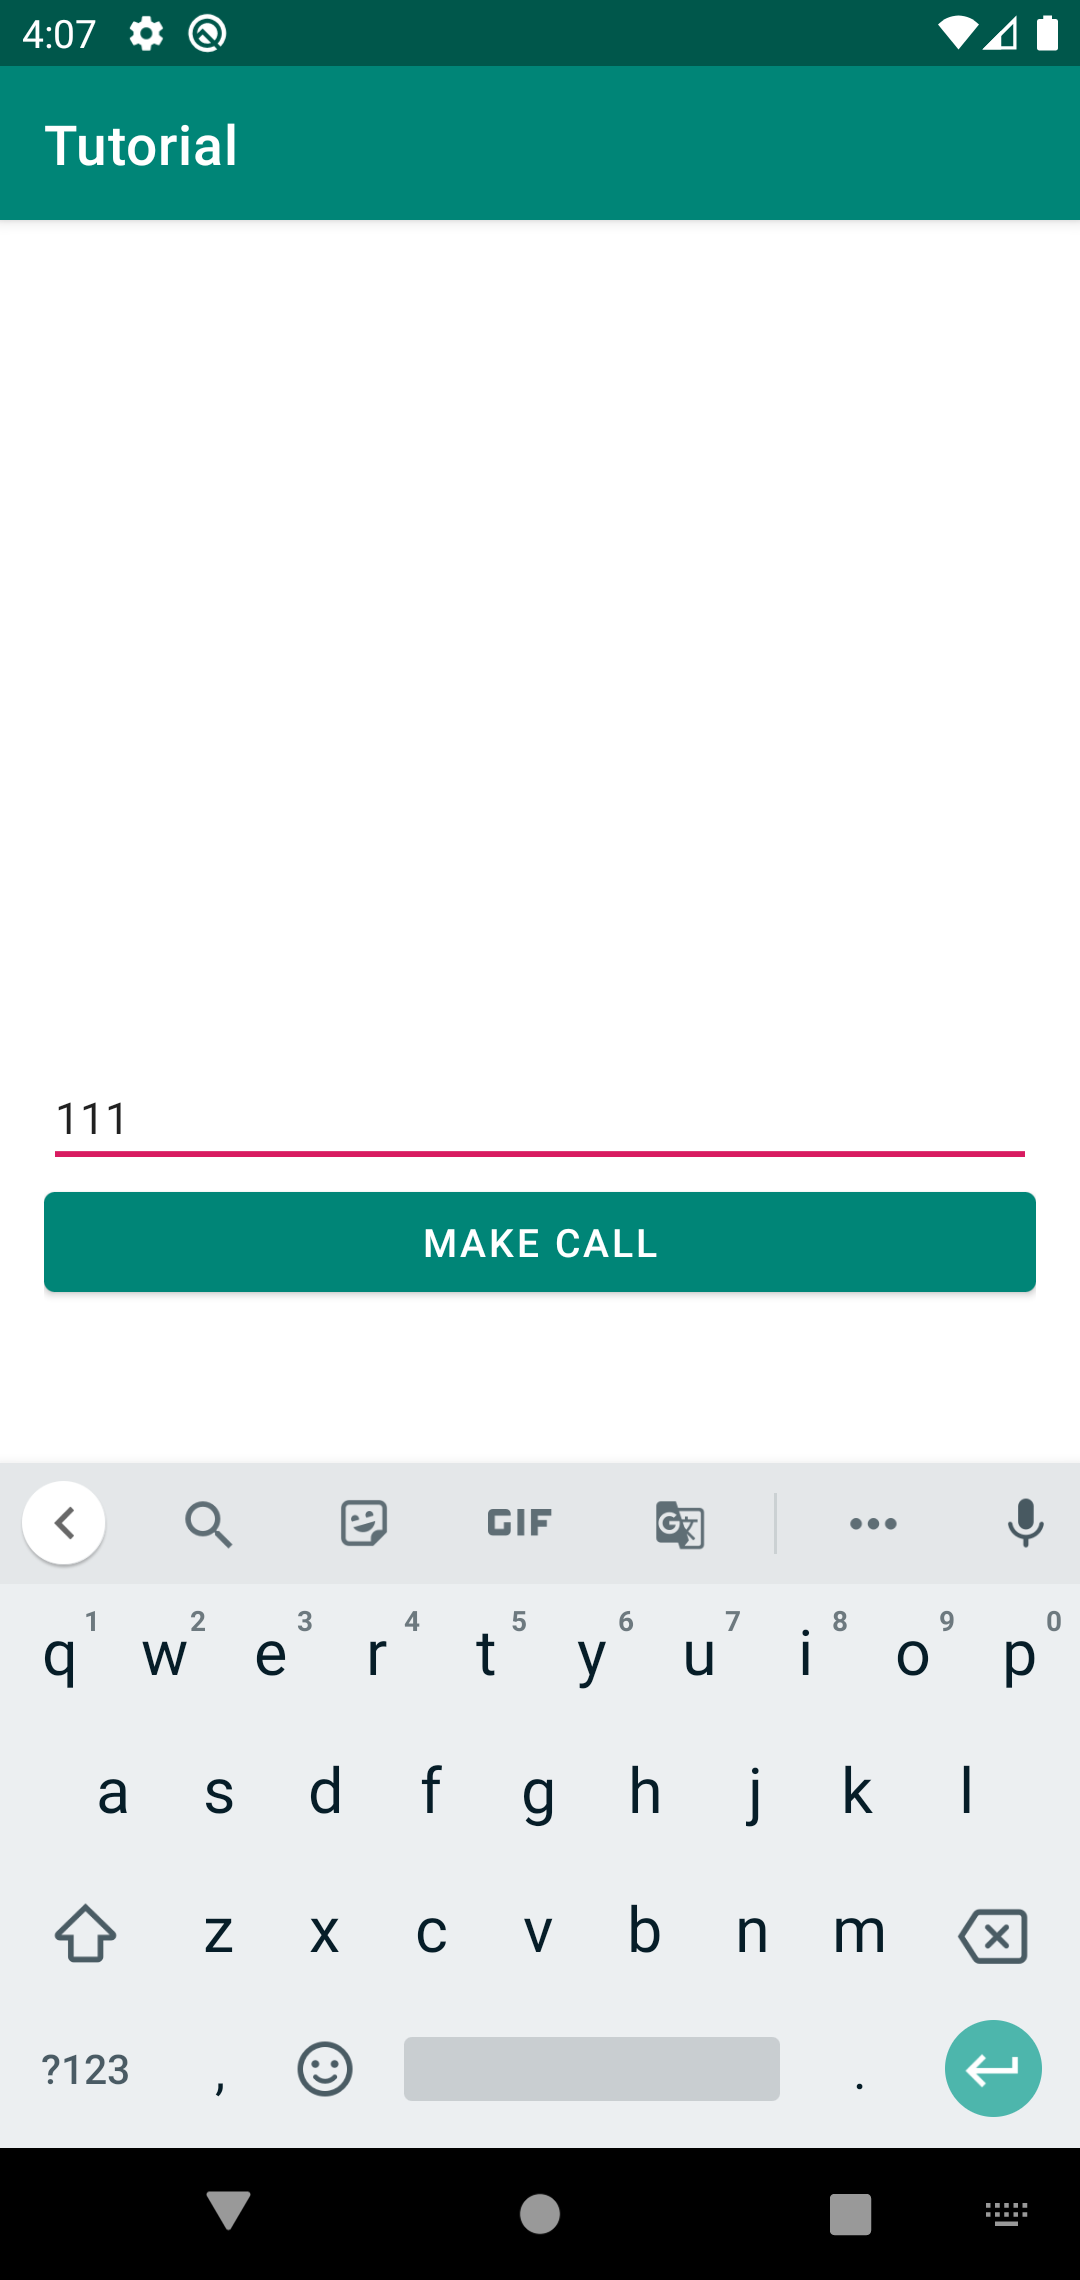 Make call screen